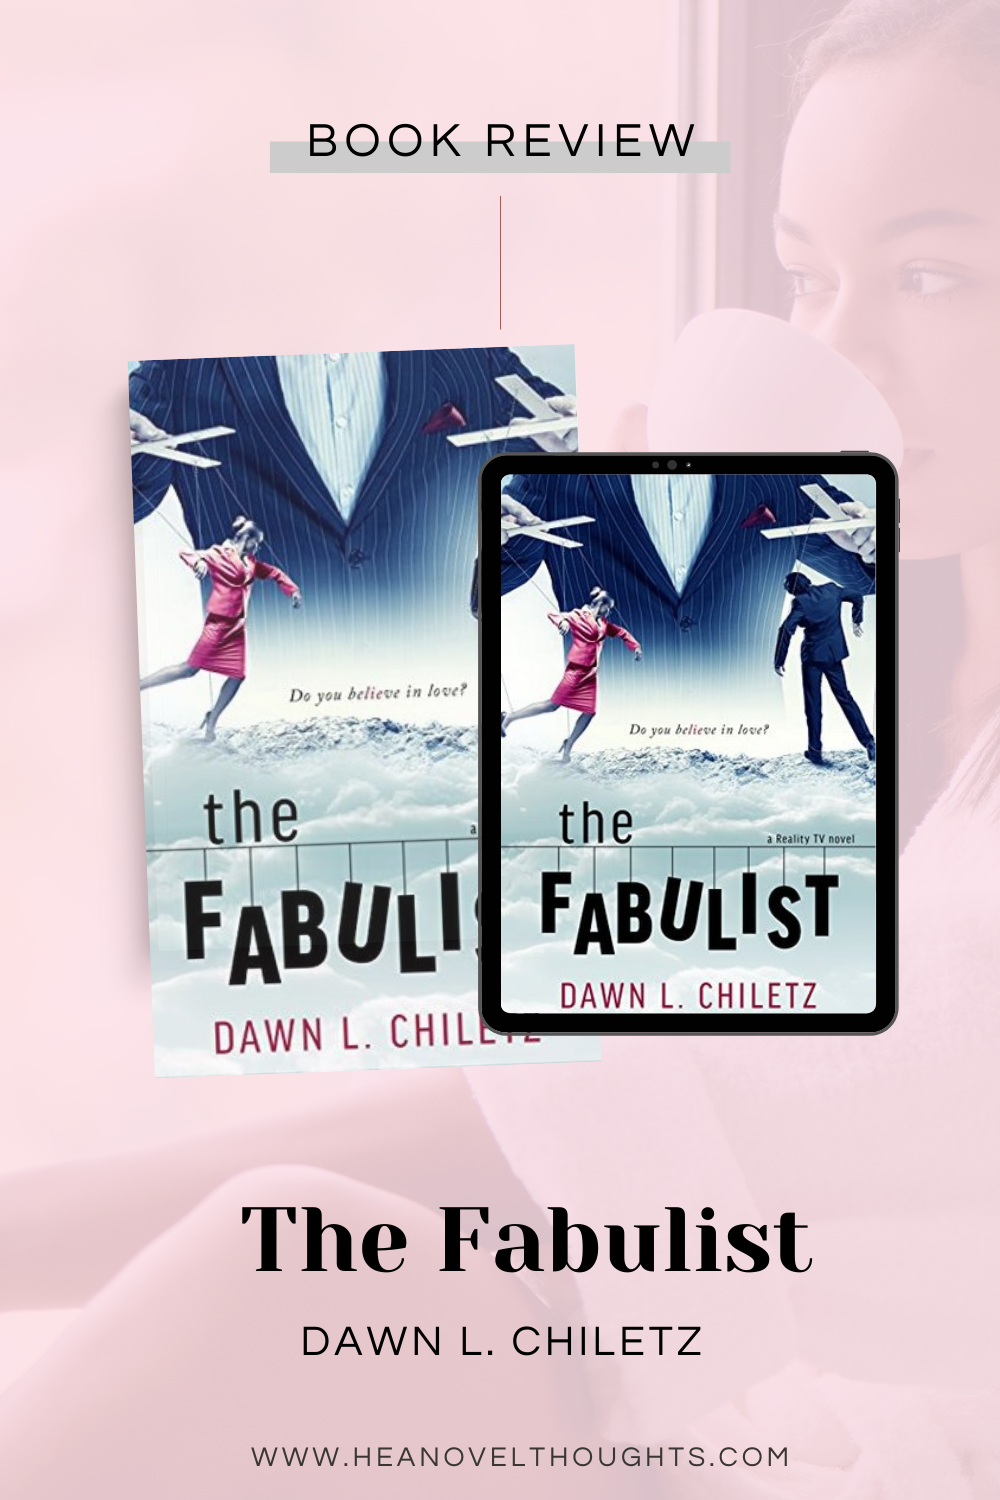 The Fabulist by Dawn Chiletz